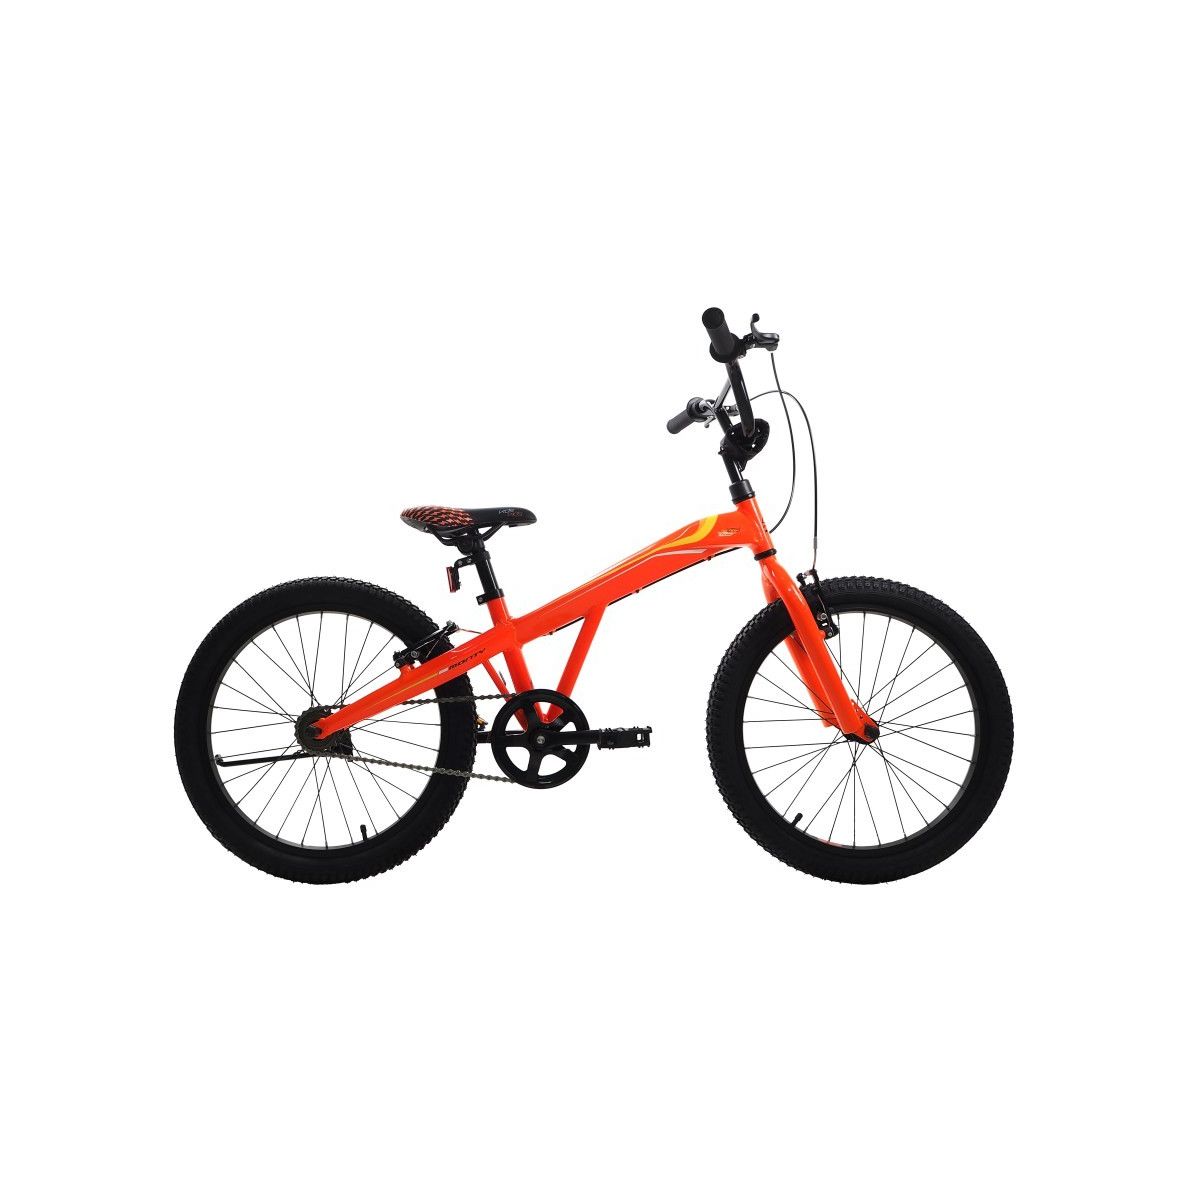 Bicicleta niño Monty 105 (5 a 7 años) 2018